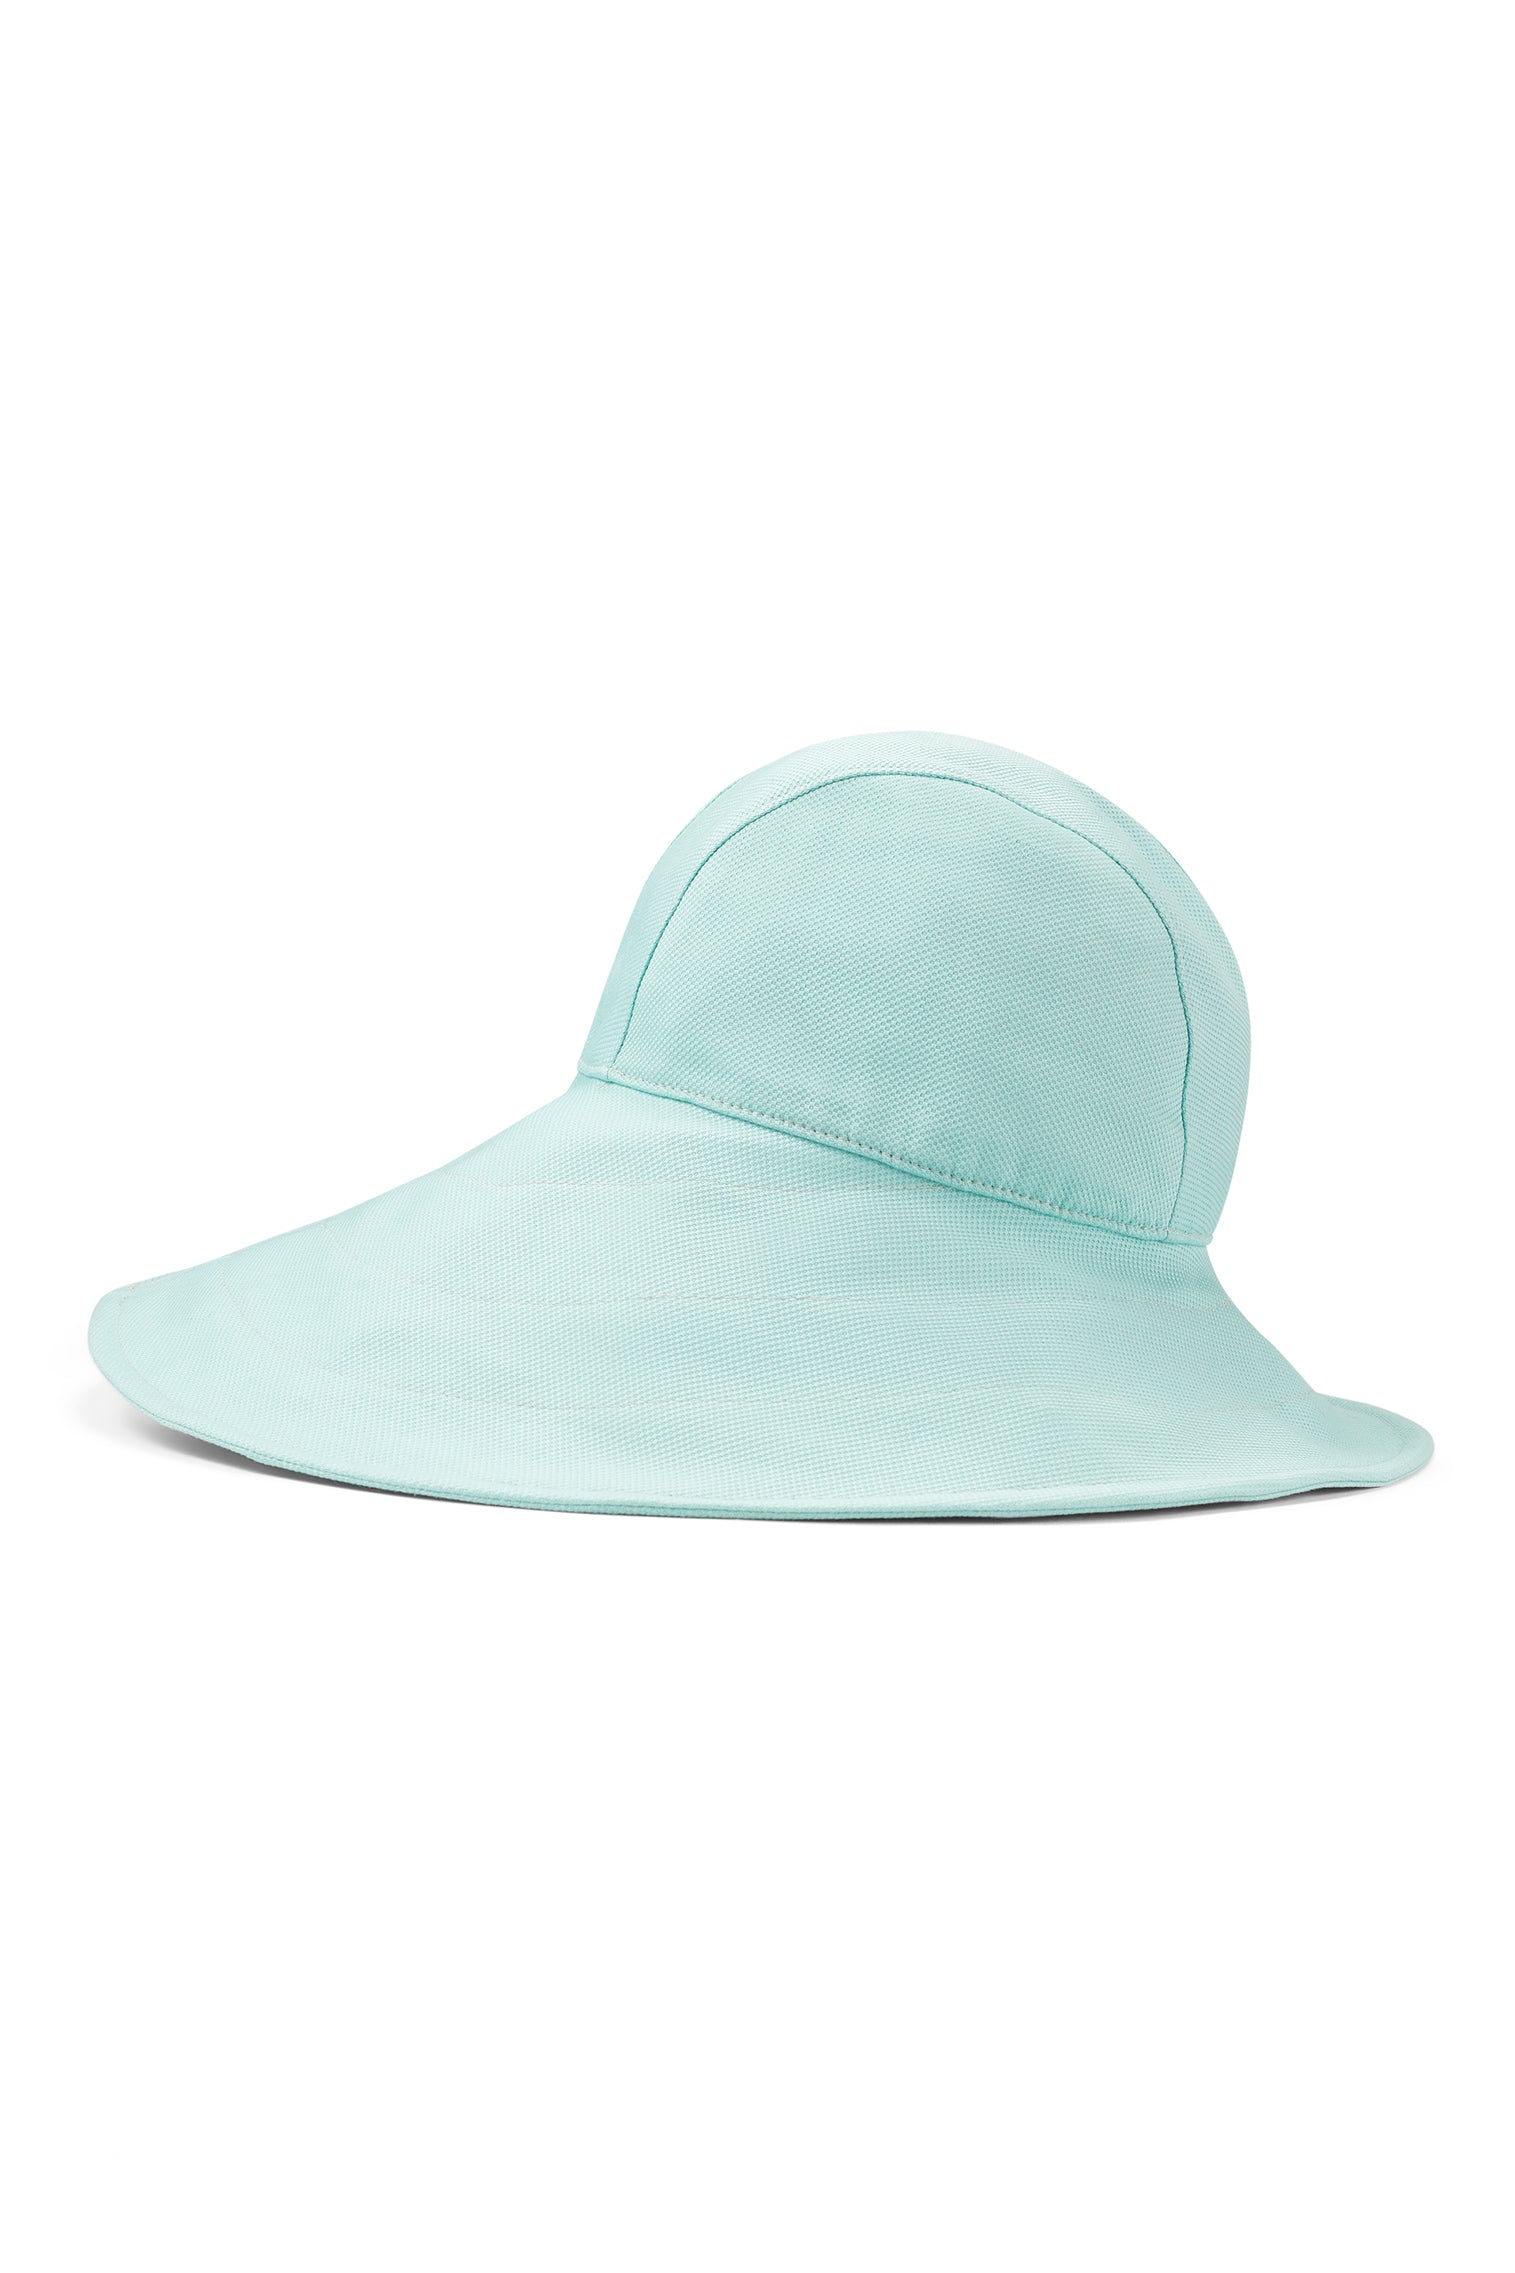 Elowyn Sou'Wester Sun Hat - Panamas, Straw and Sun Hats for Women - Lock & Co. Hatters London UK